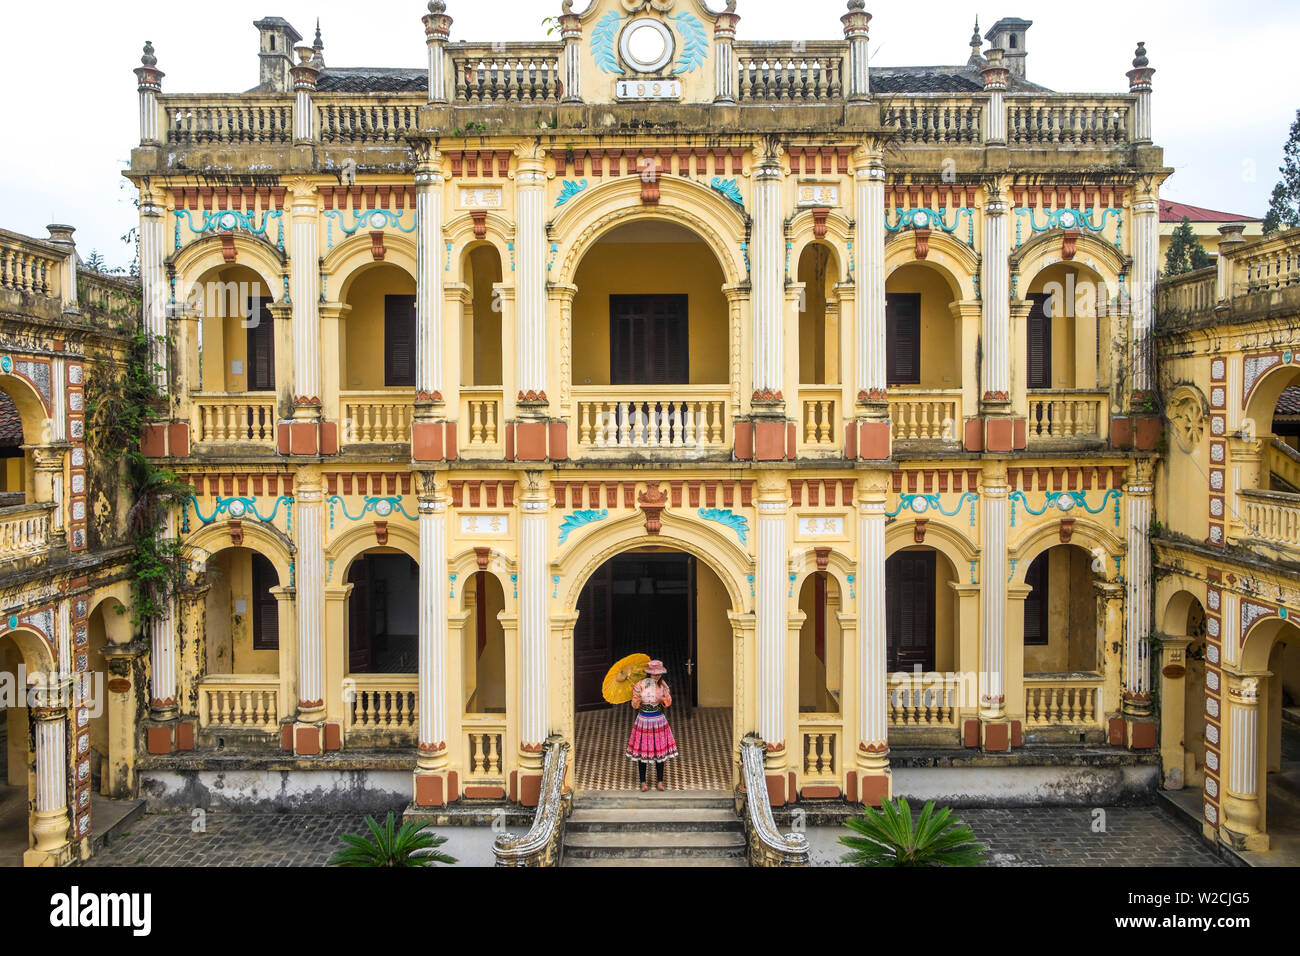 Vua Meo es una villa colonial francés / palacio de estilo barroco construido para un Rey Hmong en 1914 a 1921. Bac Ha, Vietnam Foto de stock